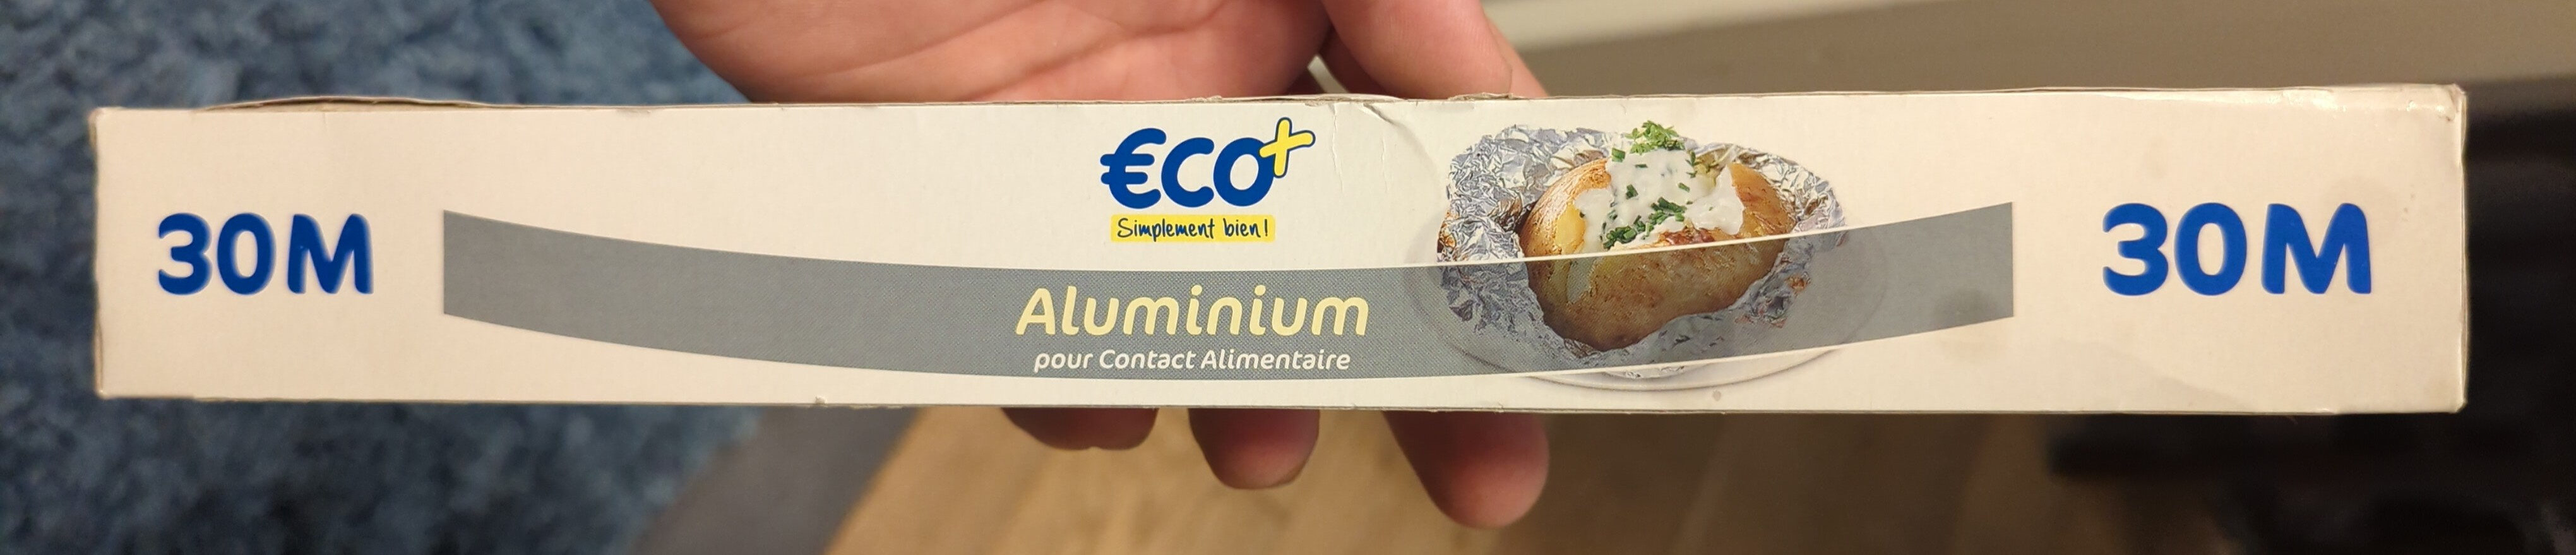 aluminium - Product - en